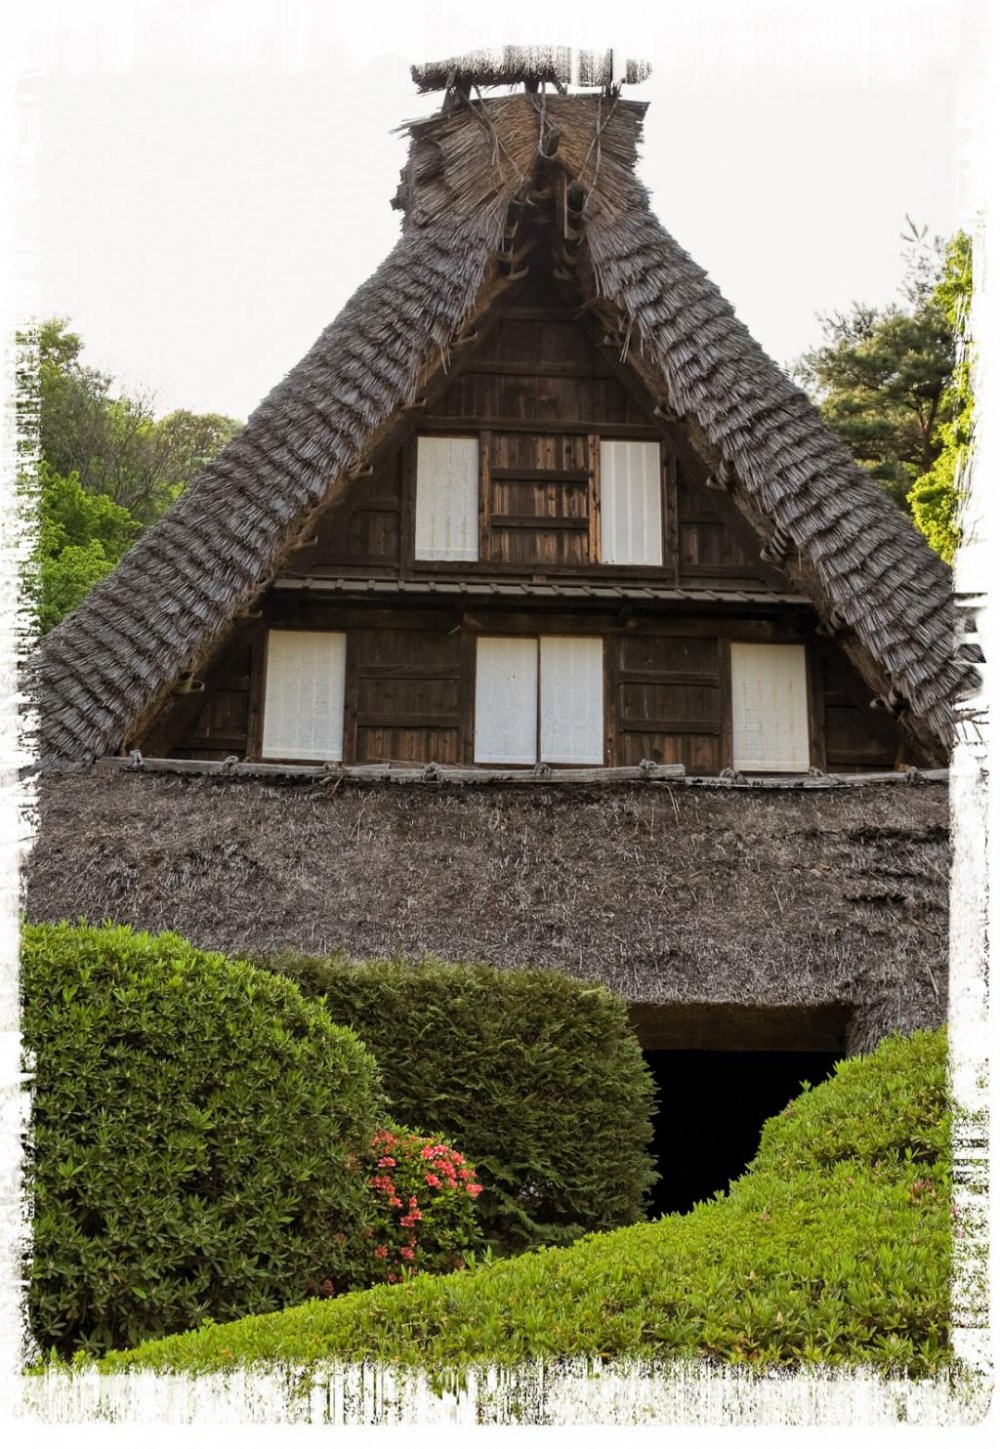 บ้าน Emukai จากจังหวัดโทะยะมะ (ปลายศตวรรคที่ 17)